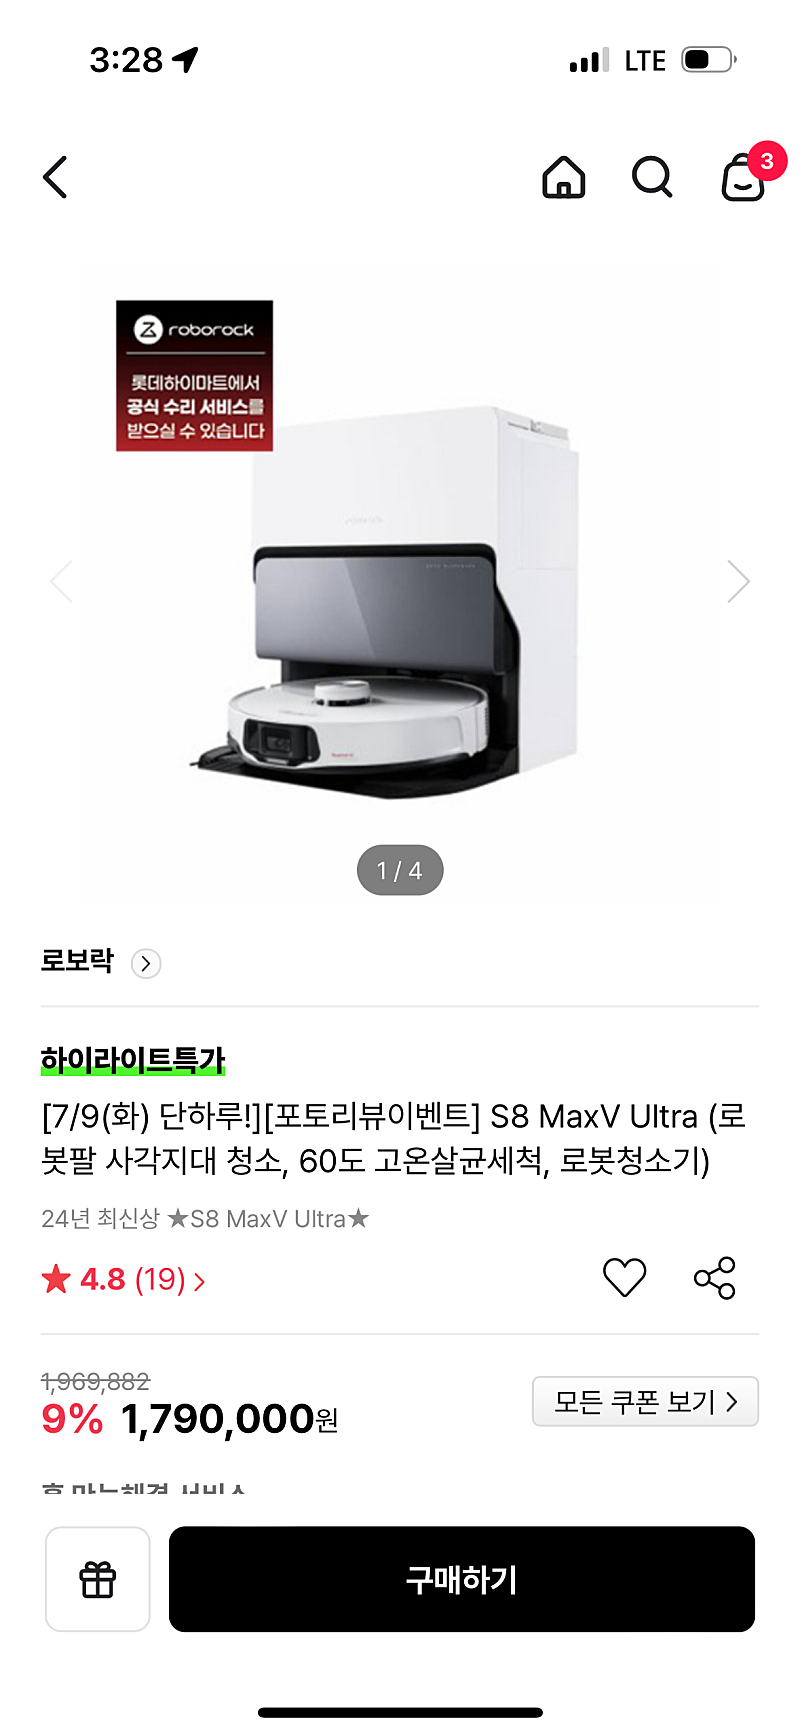 로보락 s8 maxv ultra 로봇청소기 새상품